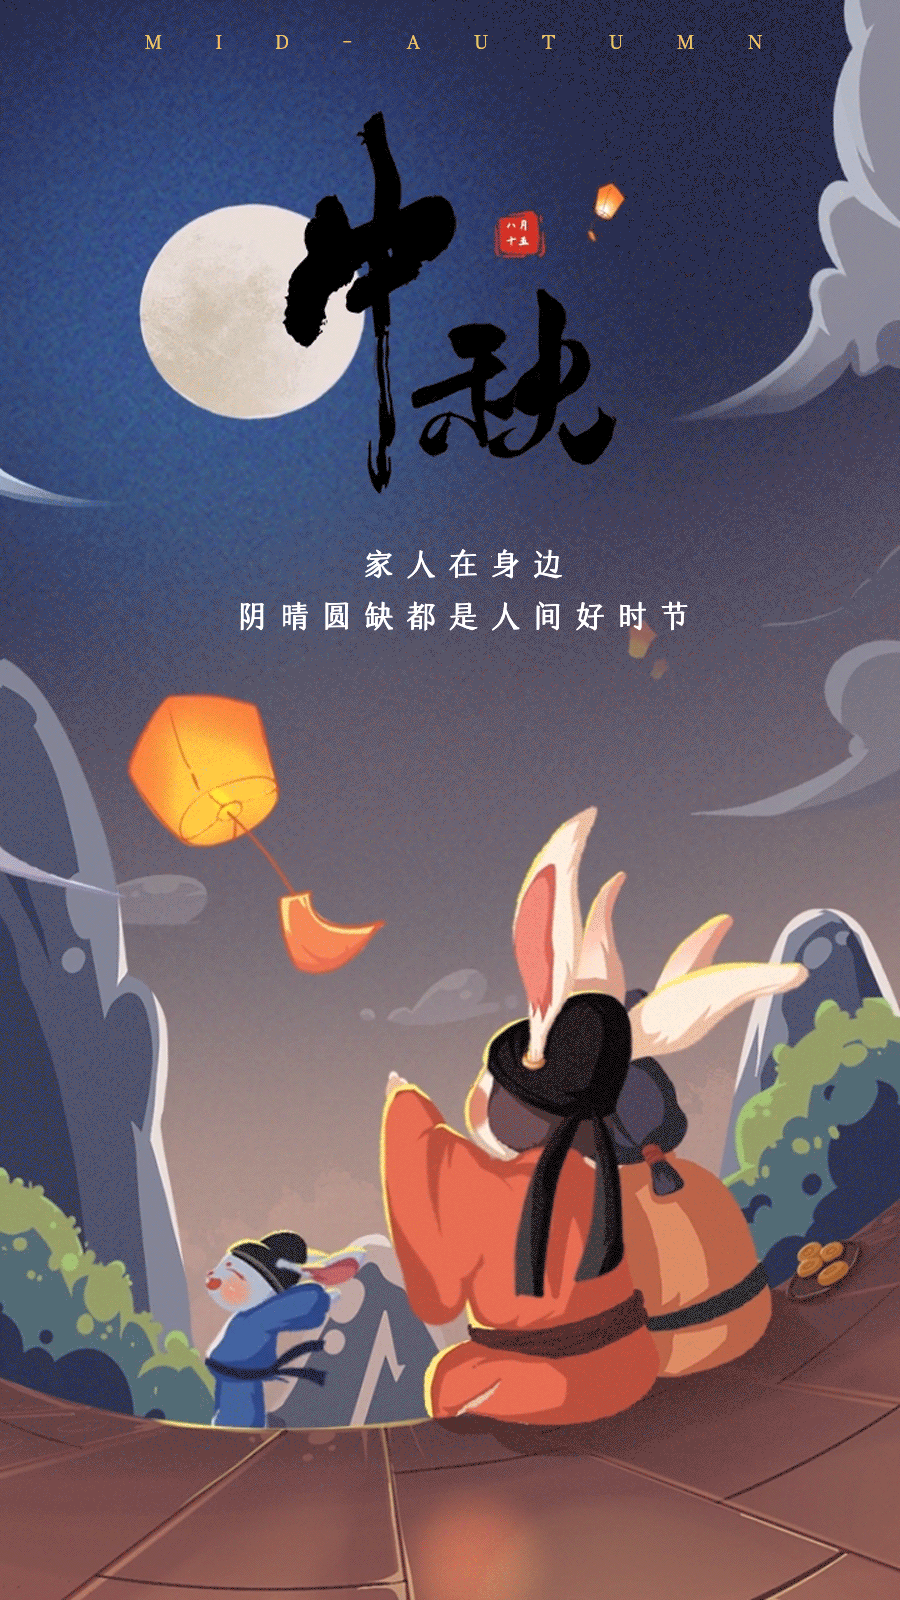 中秋节节日节点问候祝福动态海报